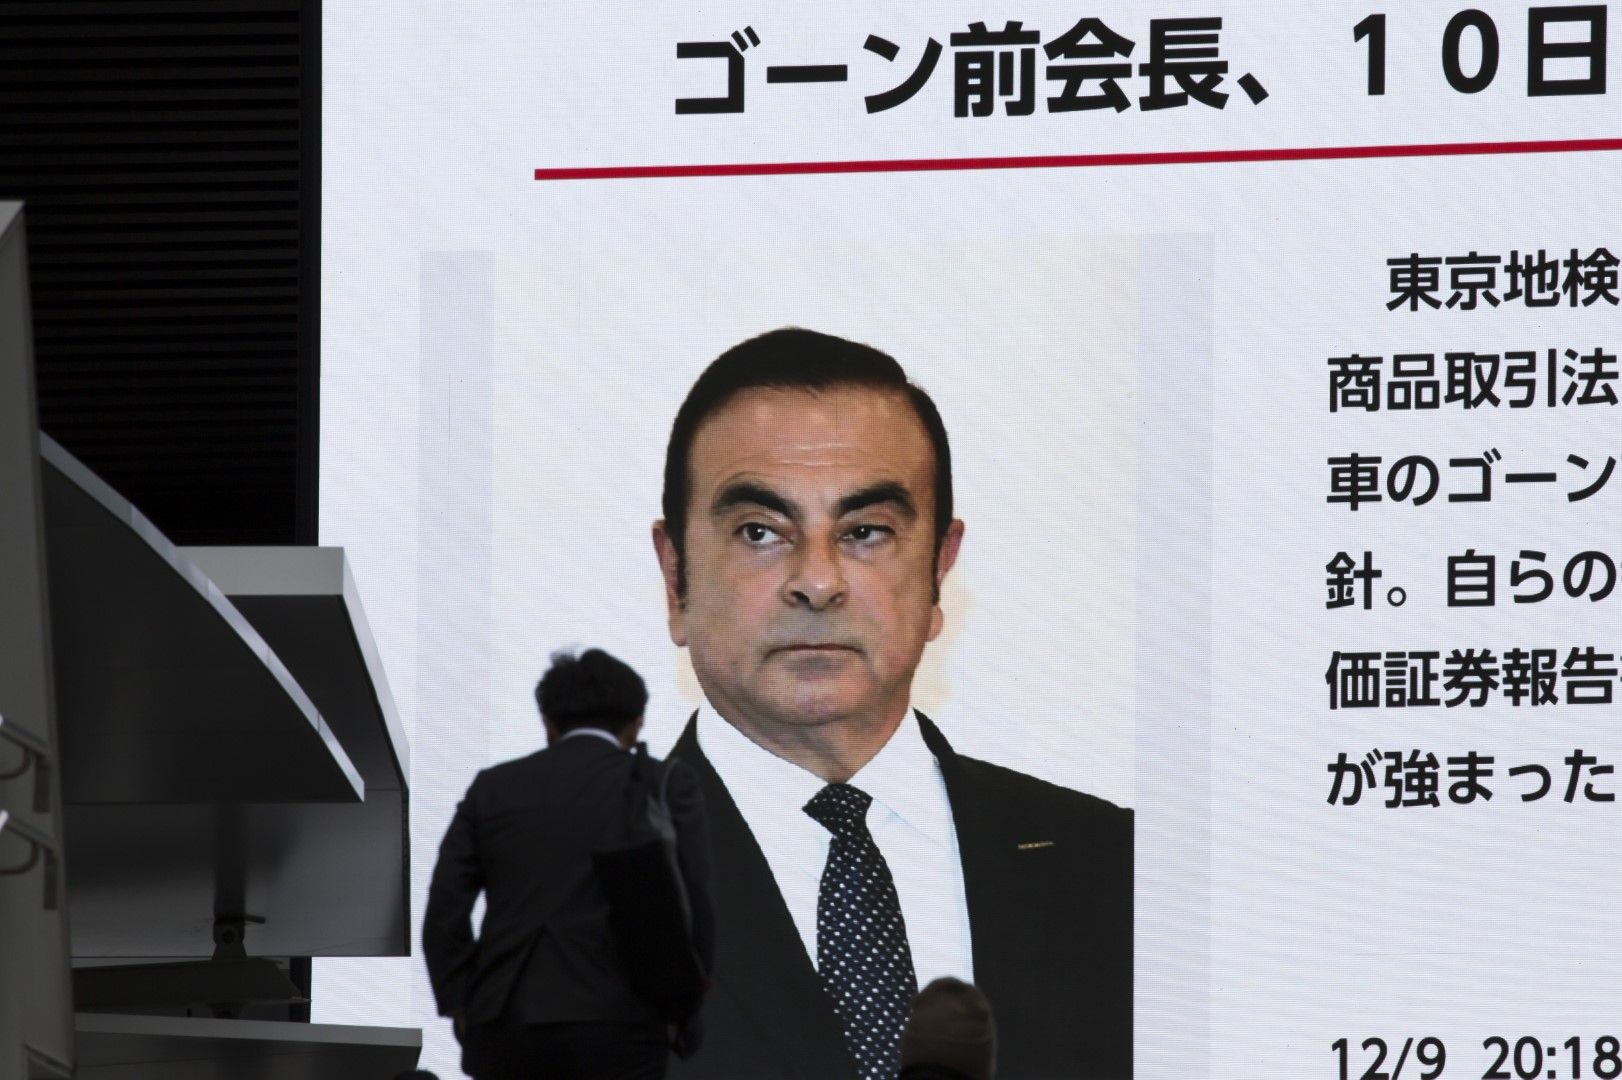 На 19 ноември в Токио бившият председател на съвета на Нисан Карлос Гон бе арестуван за предполагаеми финансови злоупотреби